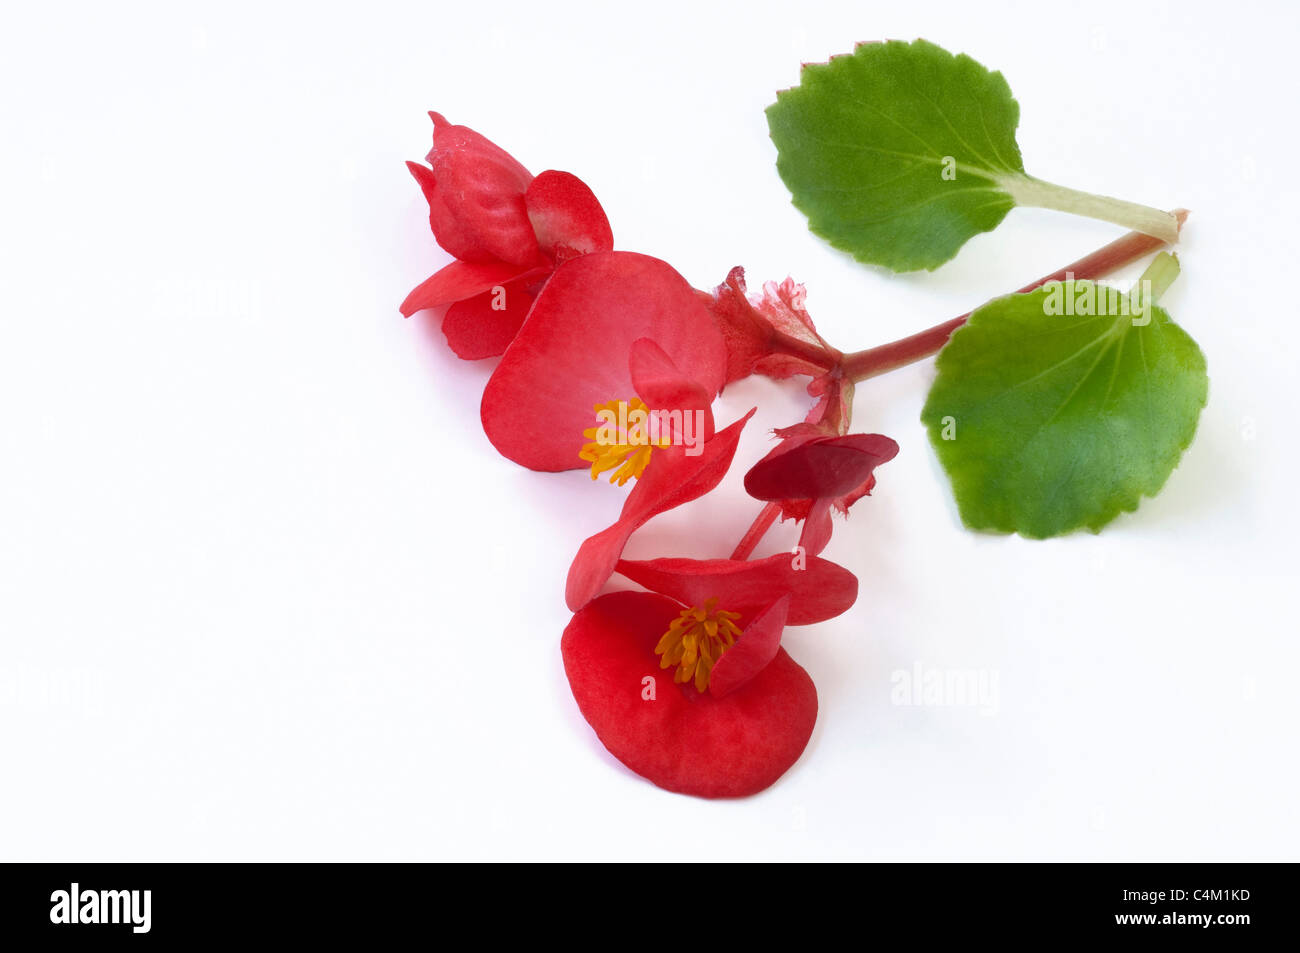 La begonia de cera, cera-leaf Begonia (Begonia x semperfloren-cultorum), el rojo de las flores y las hojas. Studio picture. Foto de stock